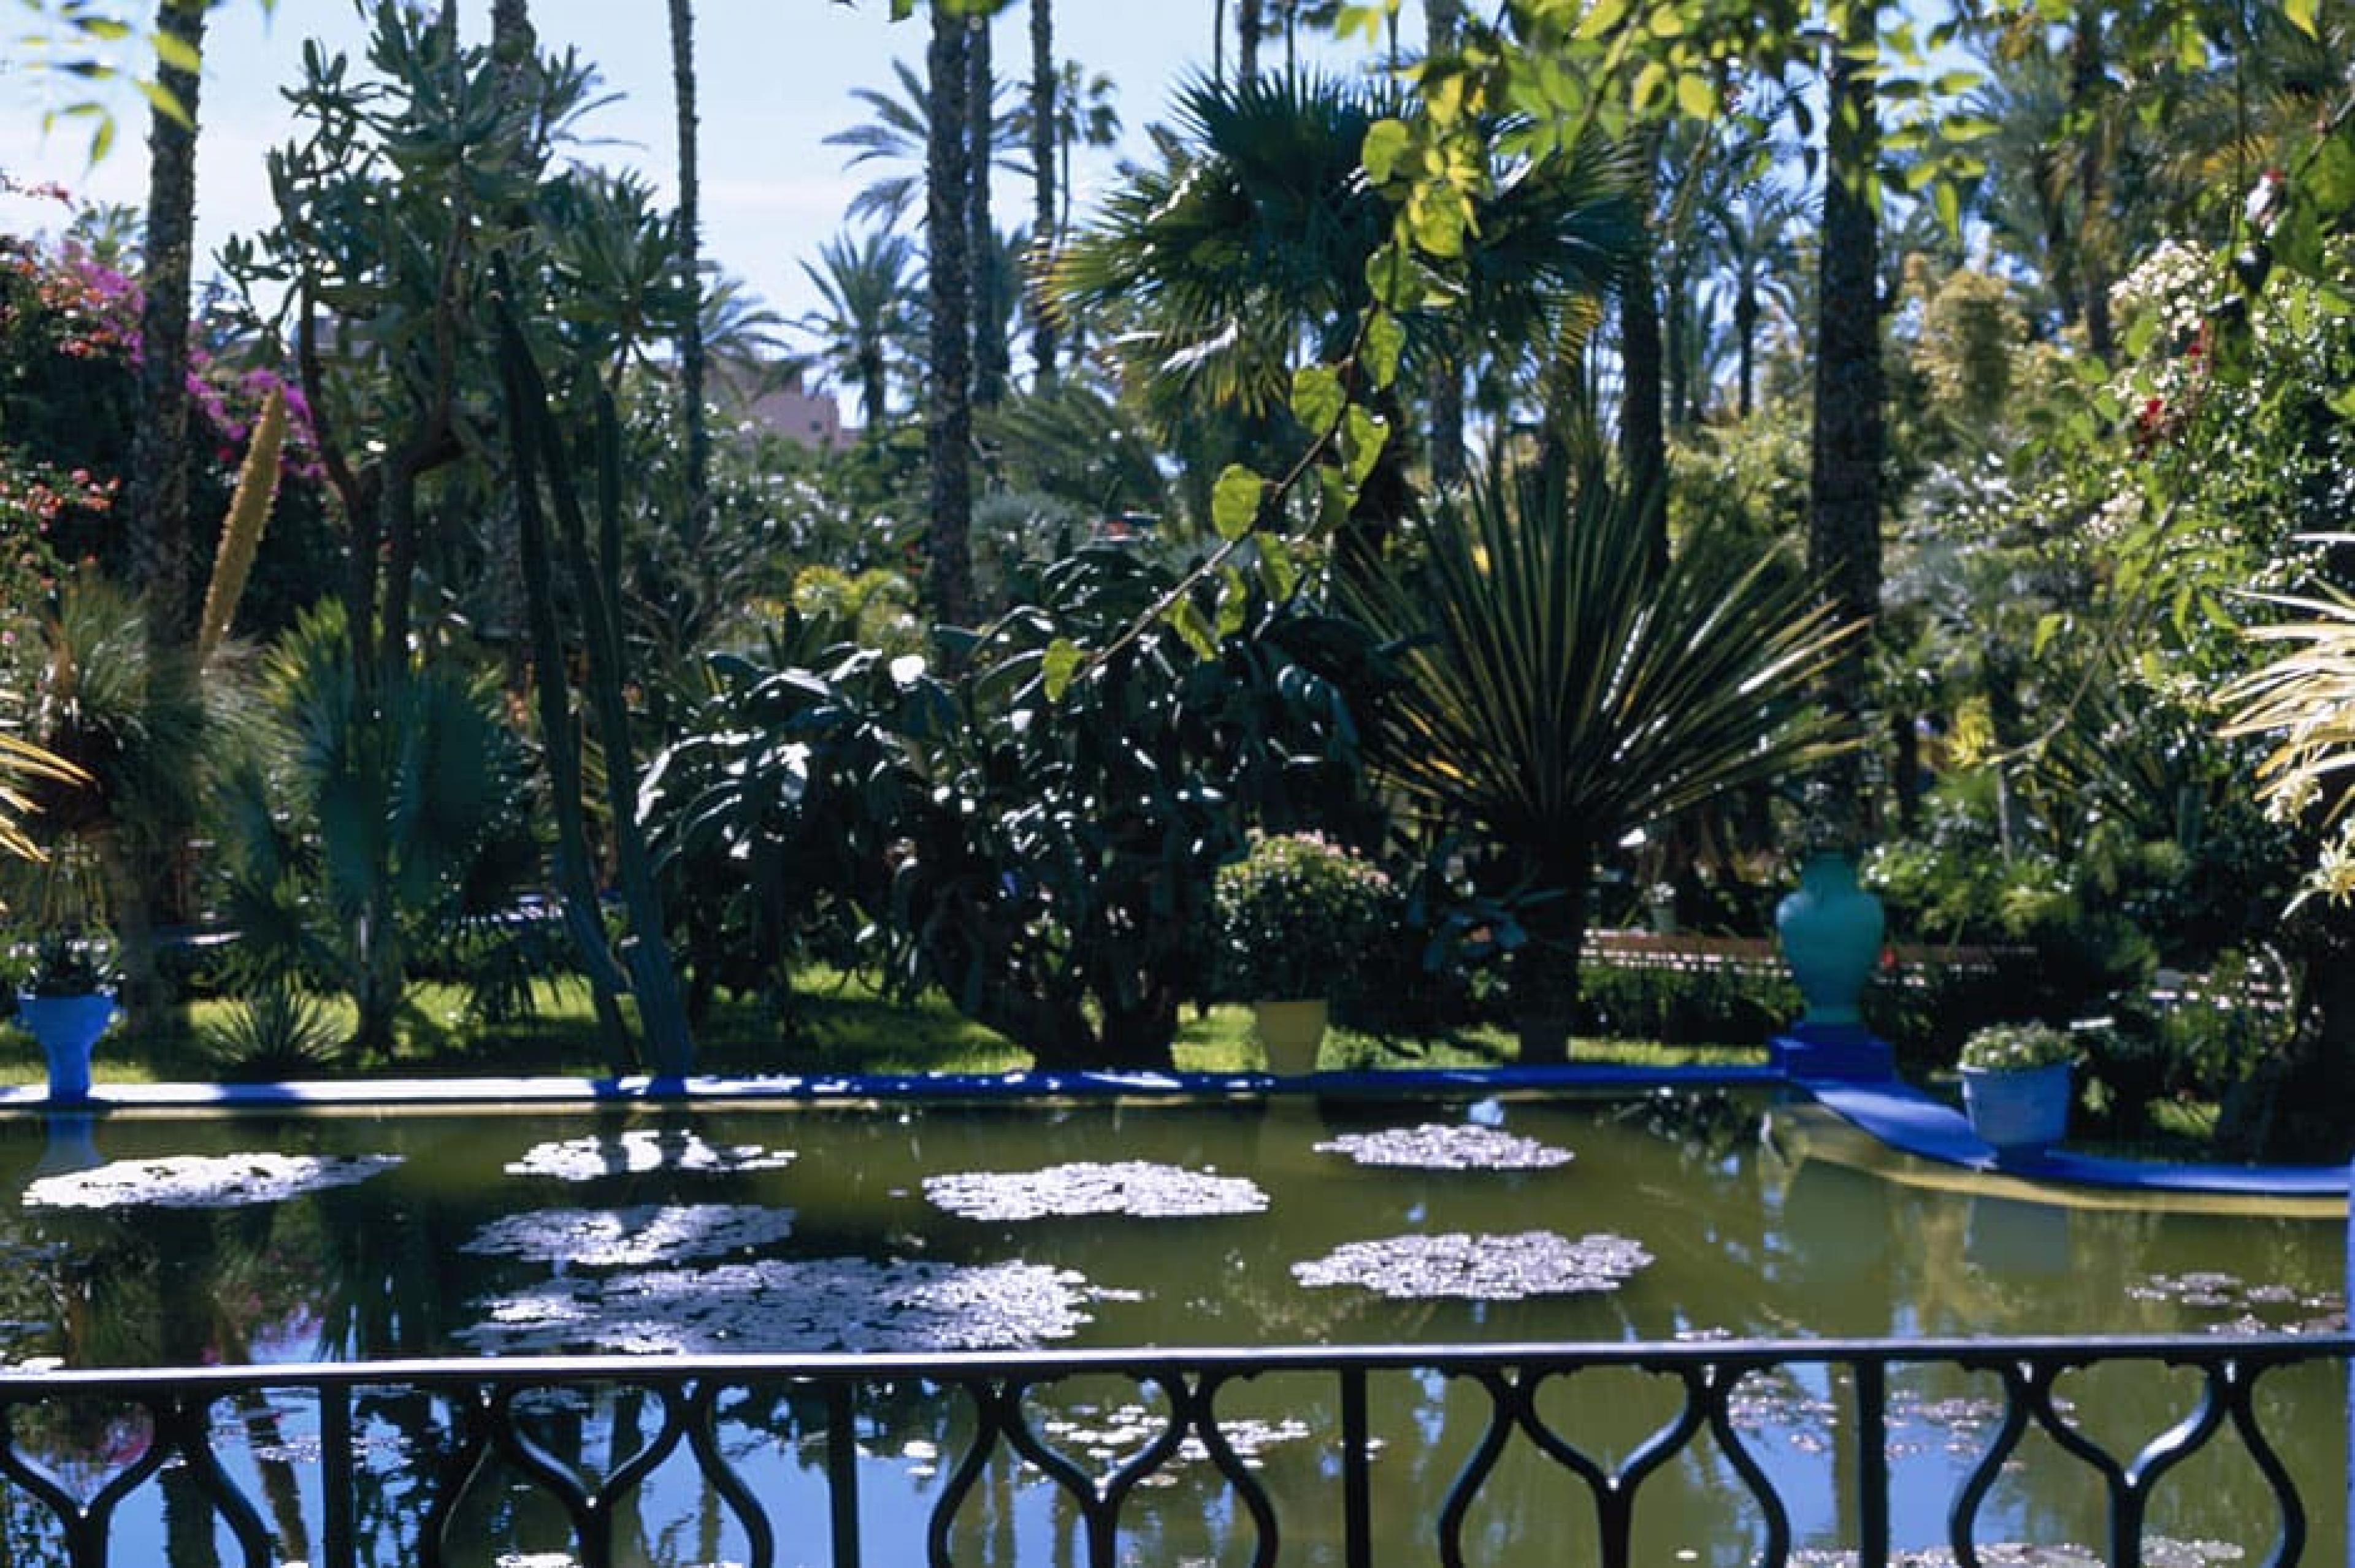 Enterior View-Jardin Majorelle , Marrakech, Morocco